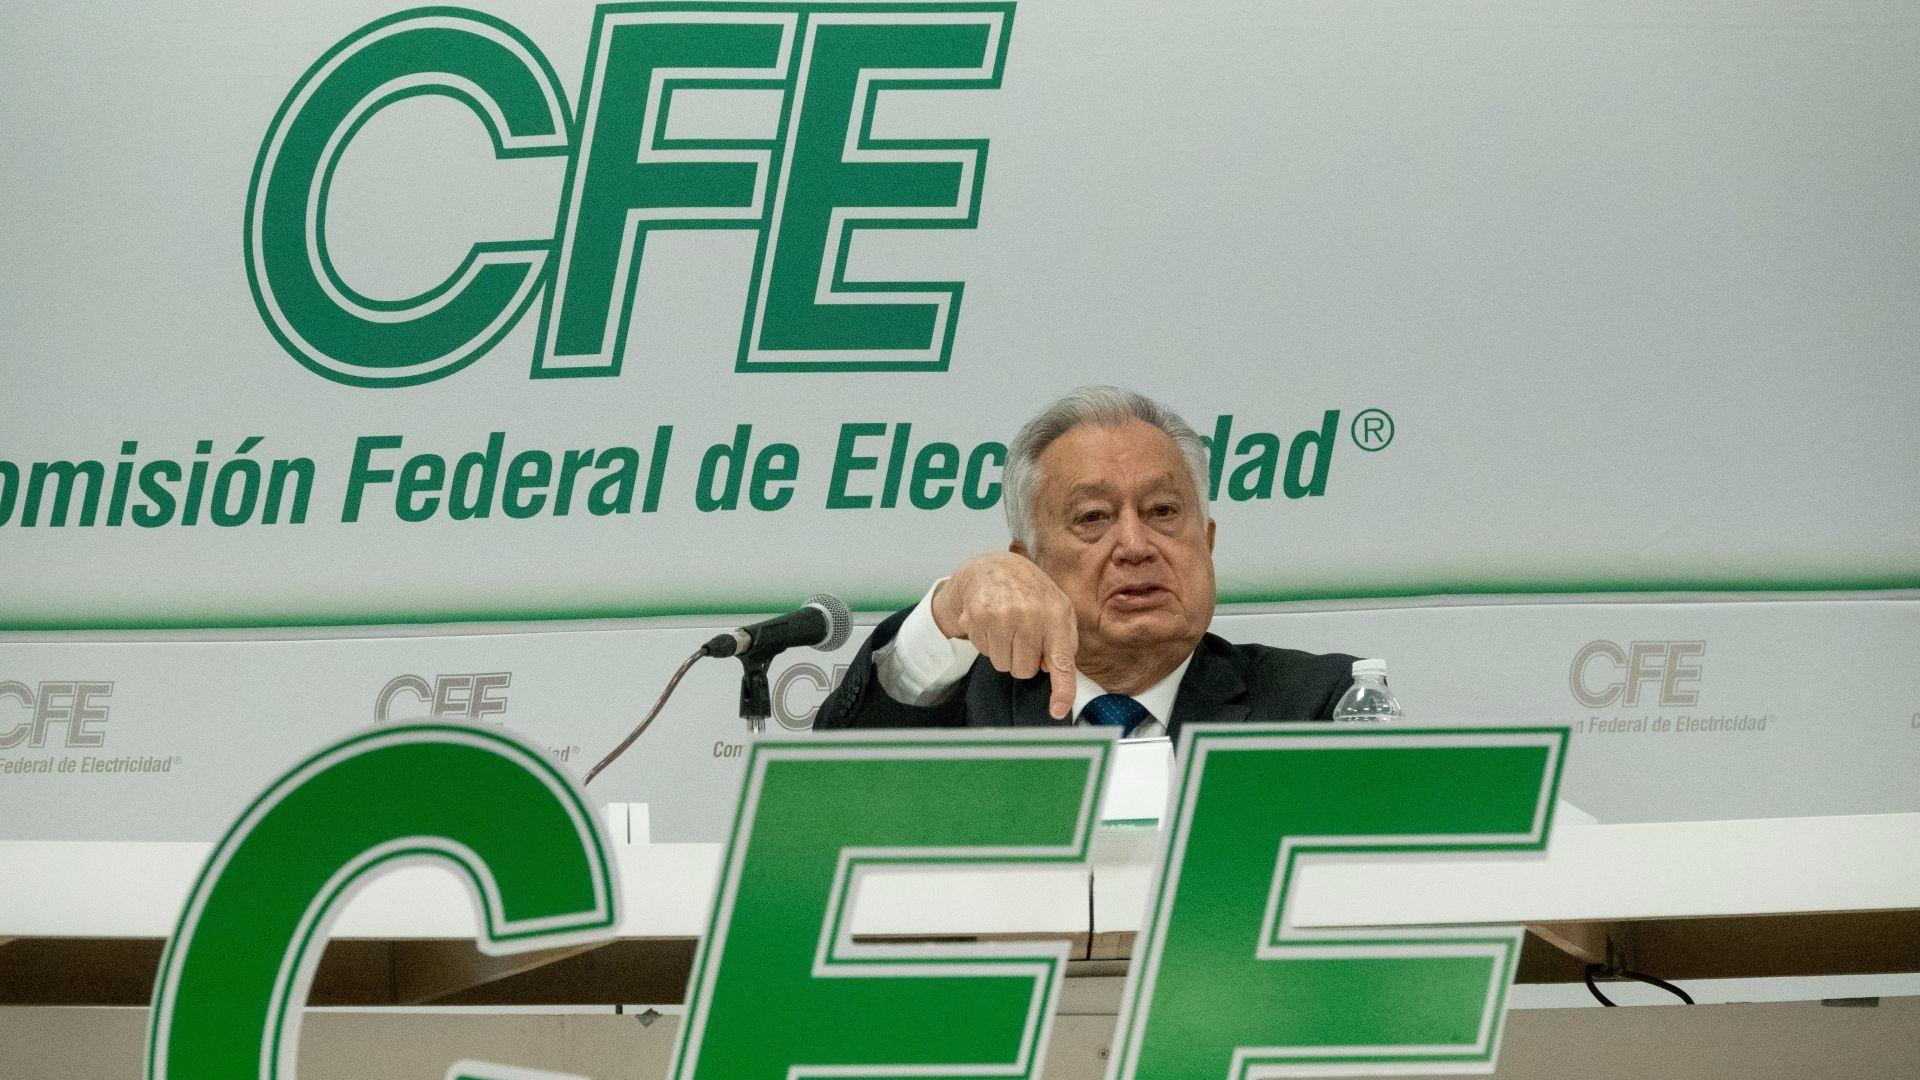 CFE oculta contratos con empresa sancionada por corrupción en AL y Europa